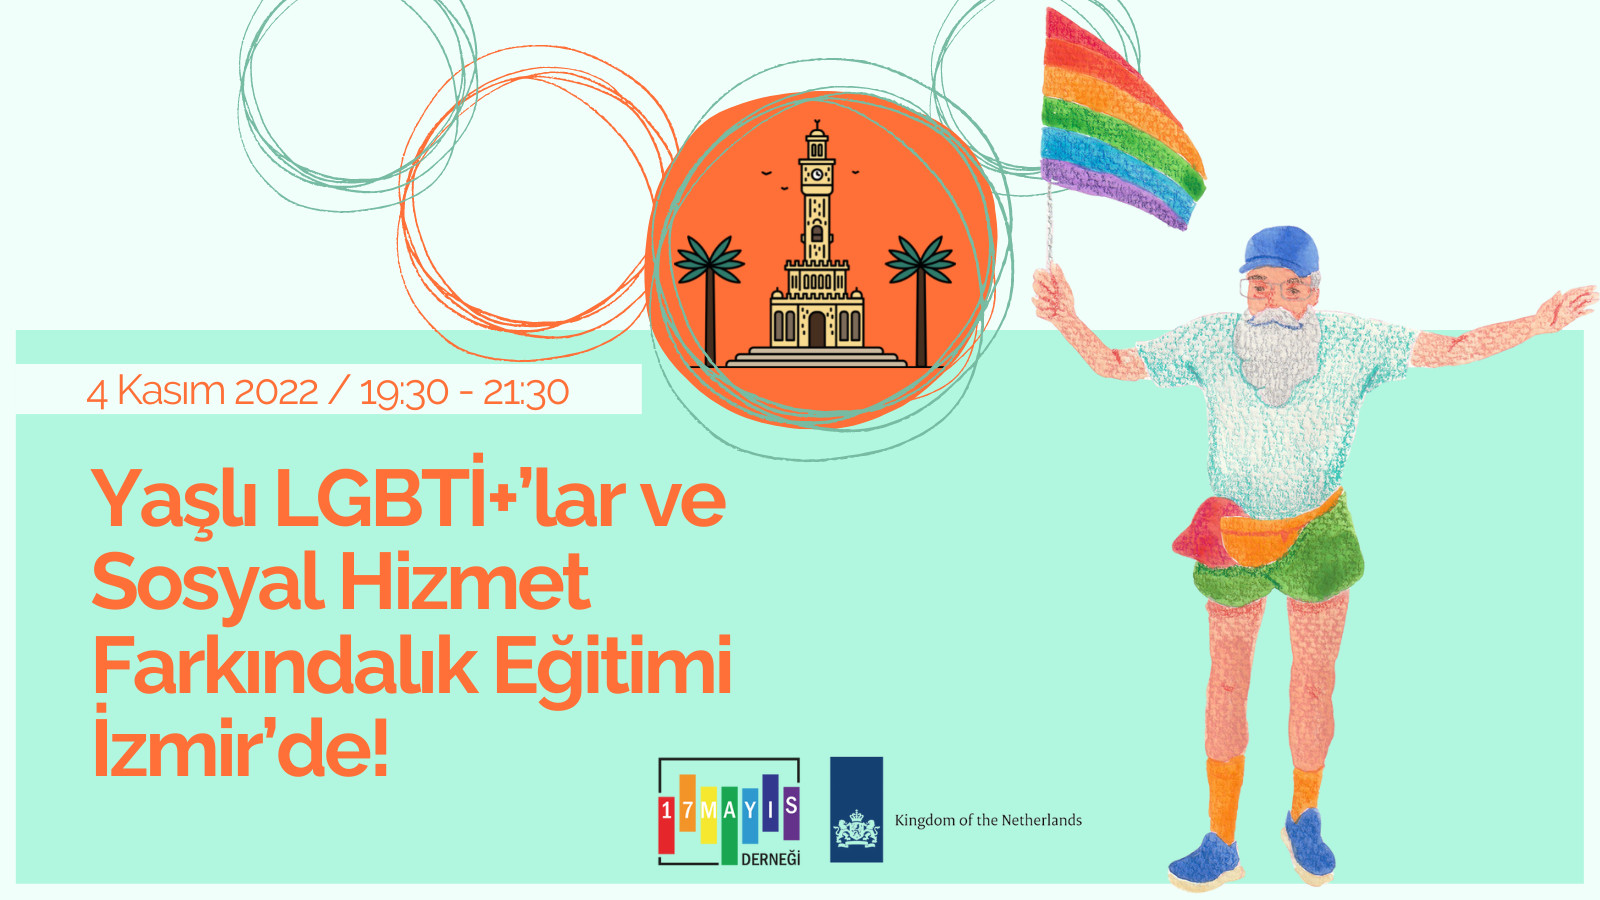 Yaşlı LGBTİ+’lar ve Sosyal Hizmet Farkındalık Eğitimi İzmir’de! - 17 Mayıs